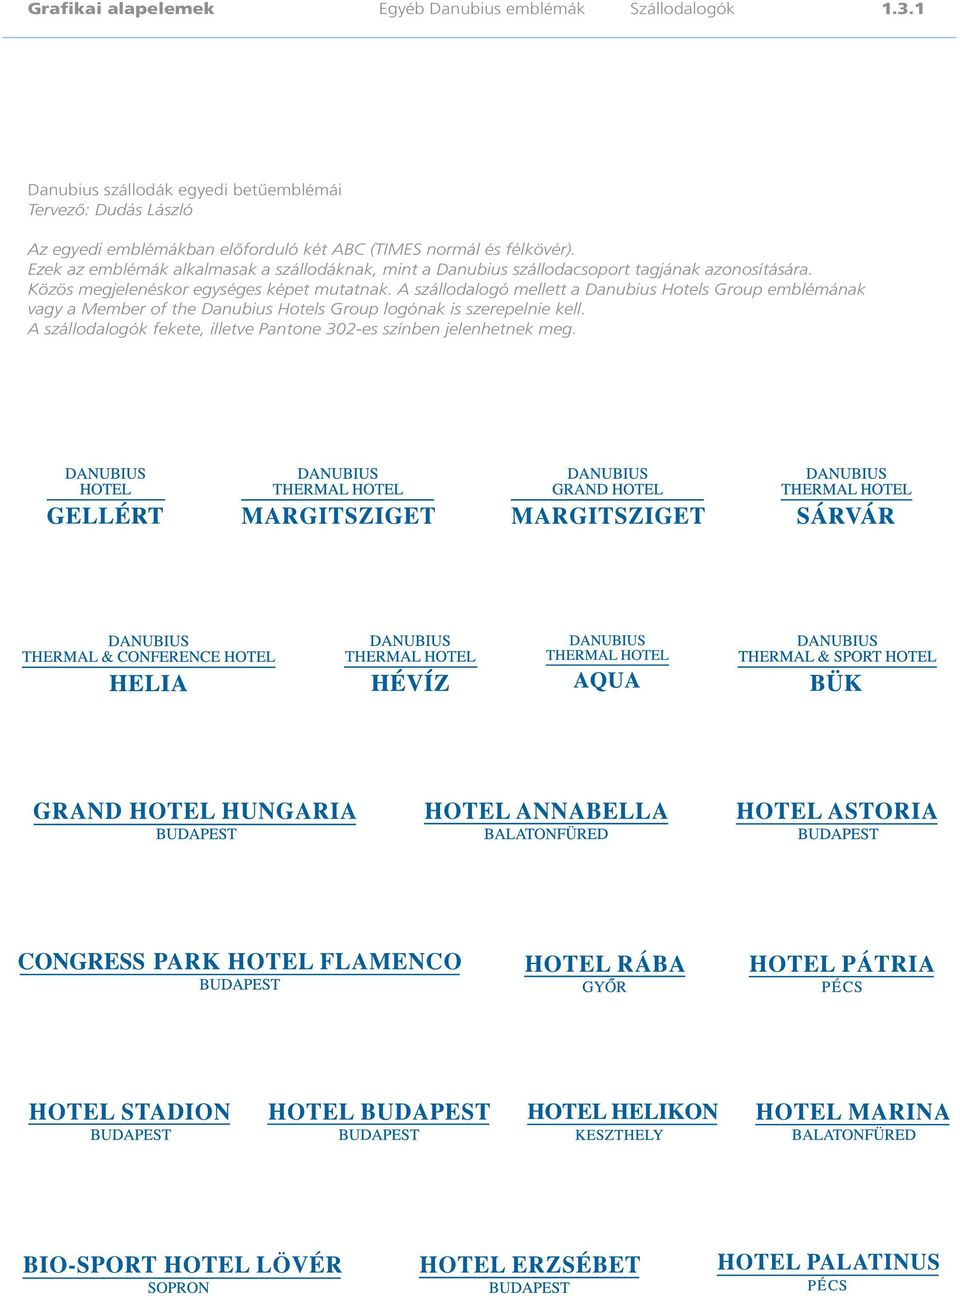 Ezek az emblémák alkalmasak a szállodáknak, mint a Danubius szállodacsoport tagjának azonosítására.